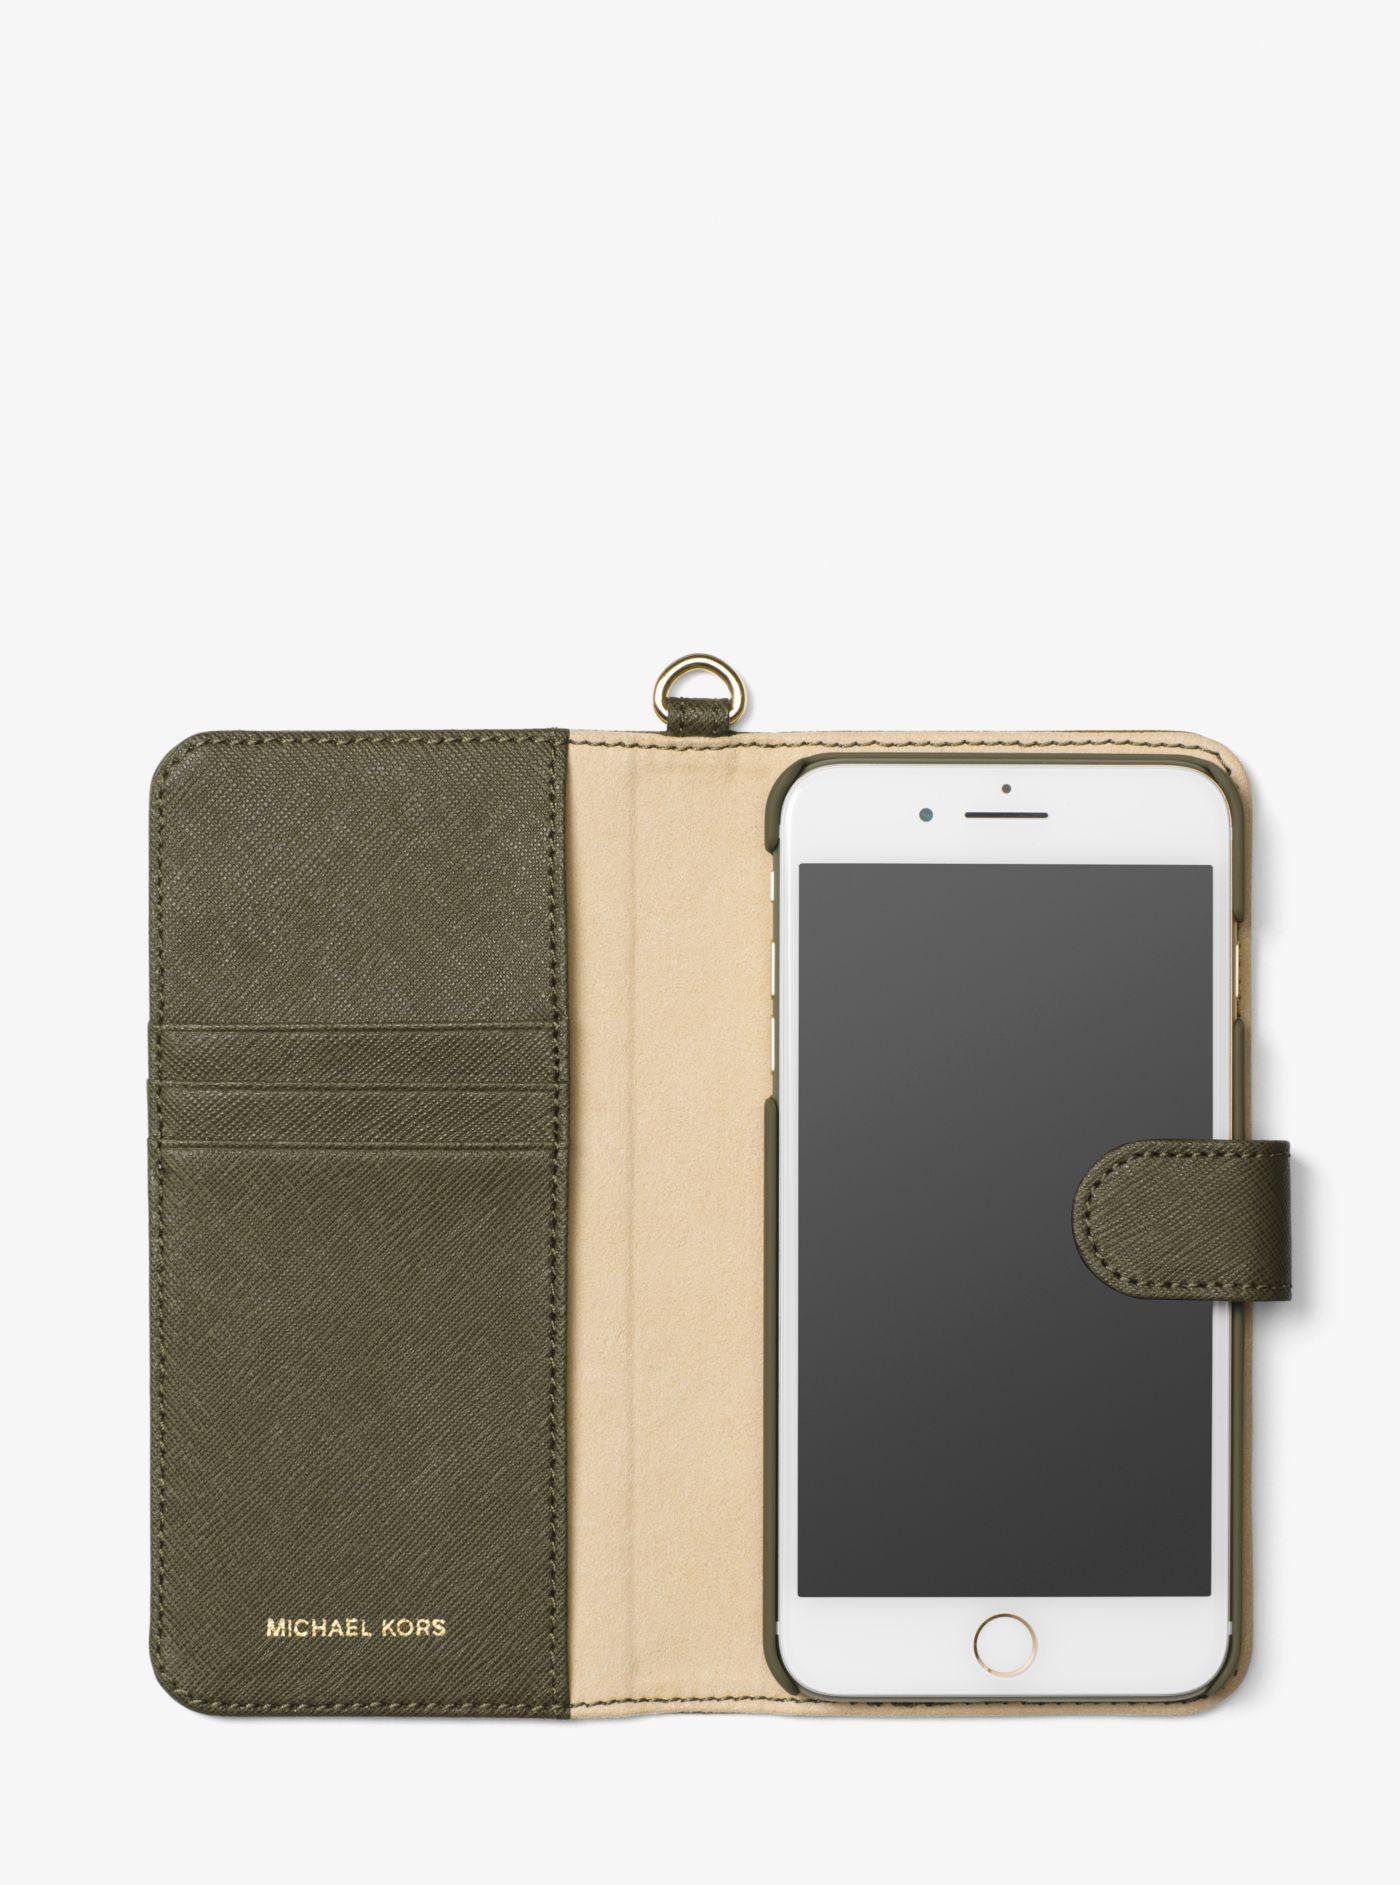 michael kors iphone 7 plus wallet case